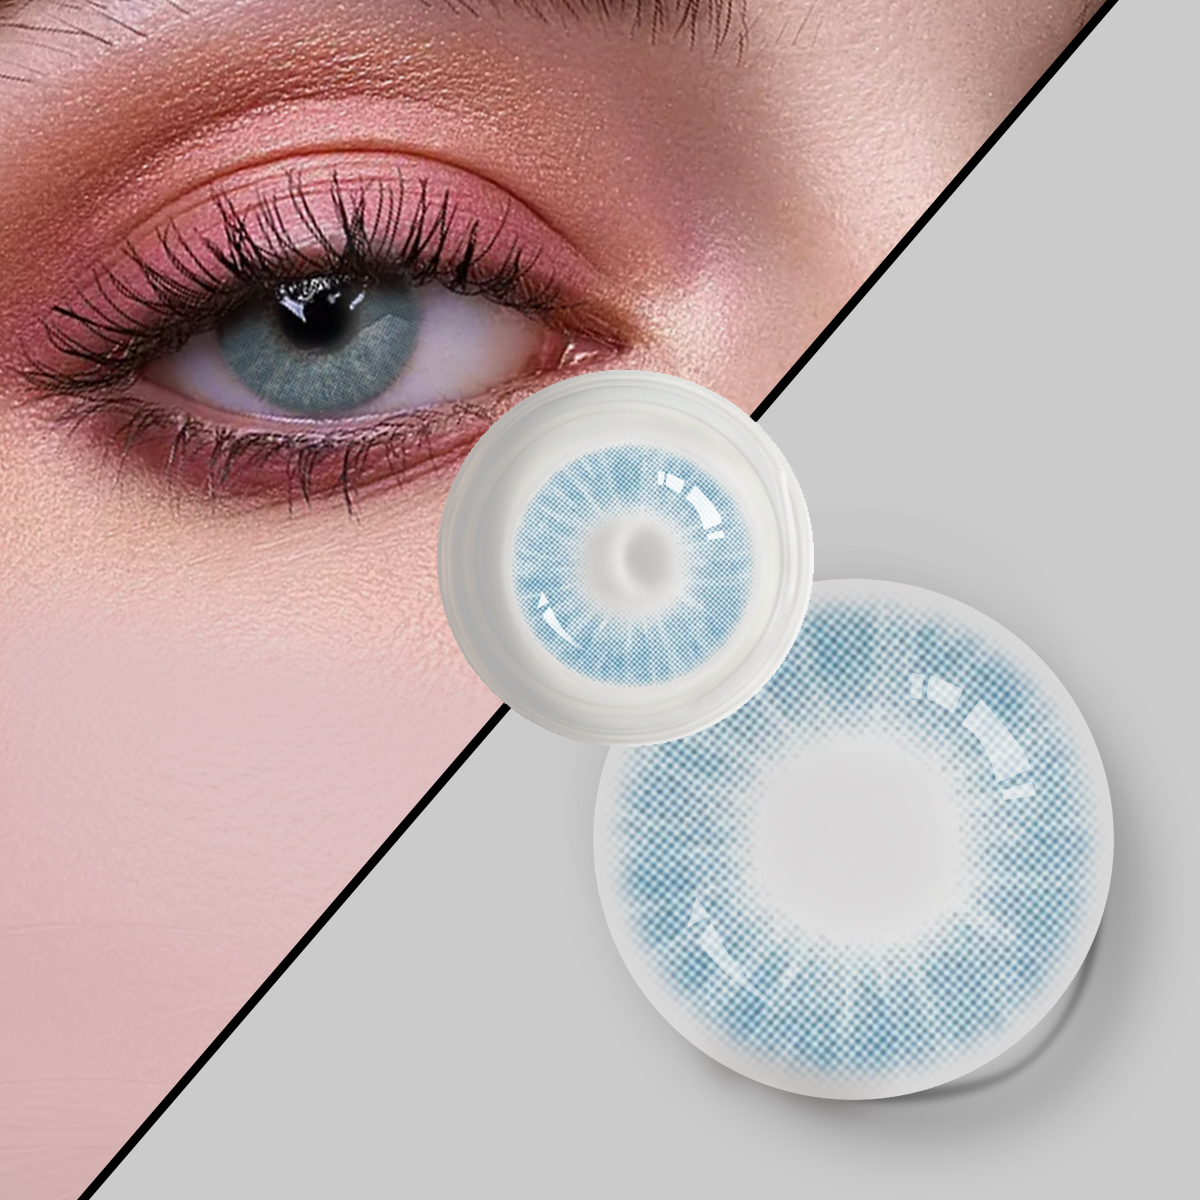 DBEYES កែវភ្នែកពណ៌ធម្មជាតិបំផុត Magic Color Soft Contact Lens ជាមួយនឹងថាមពលតាមវេជ្ជបញ្ជា ដឹកជញ្ជូនដោយឥតគិតថ្លៃ